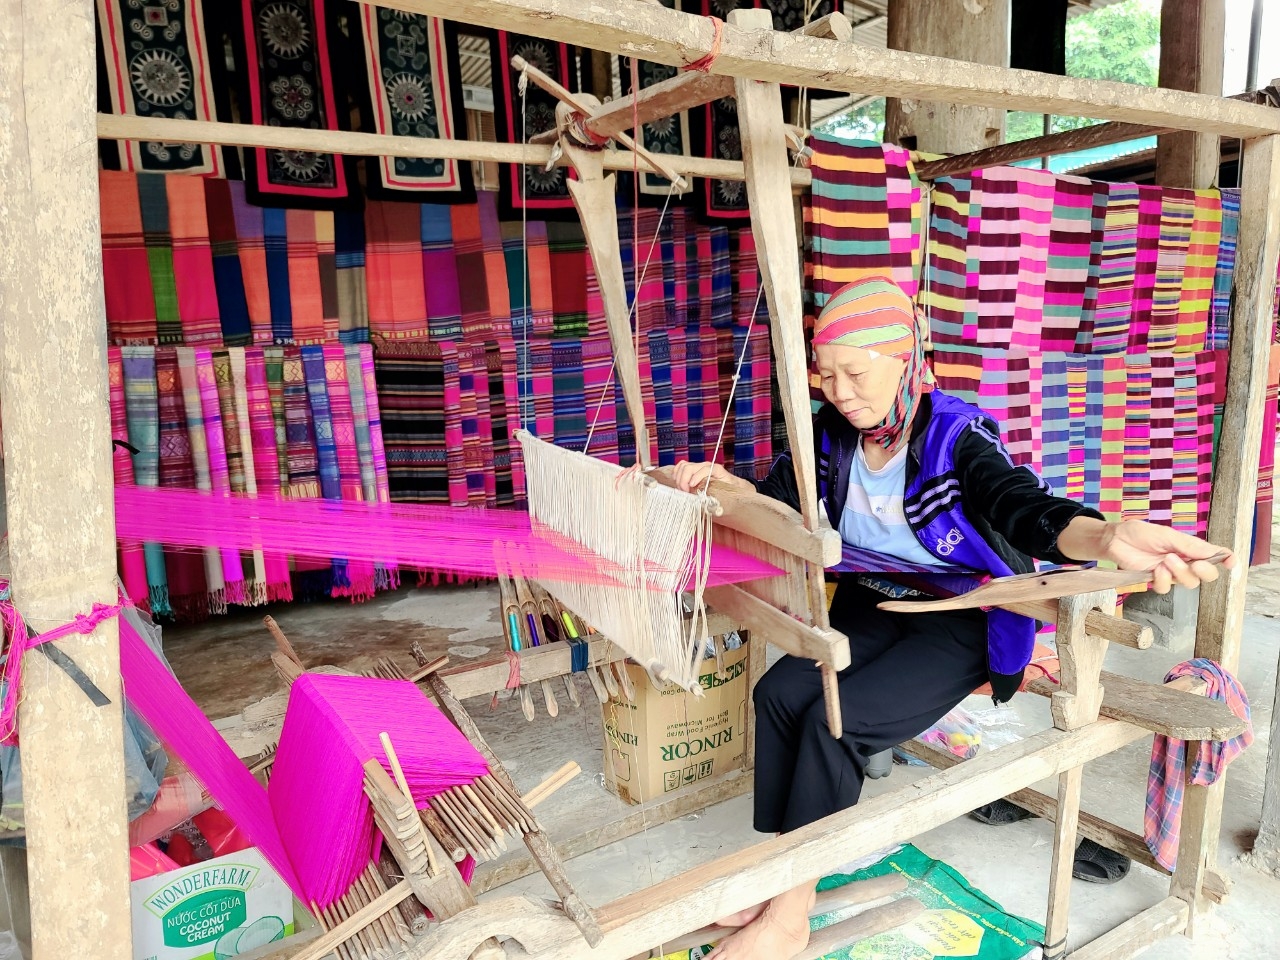 Dệt vải – nghề truyền thống đồng bào dân tộc Thái